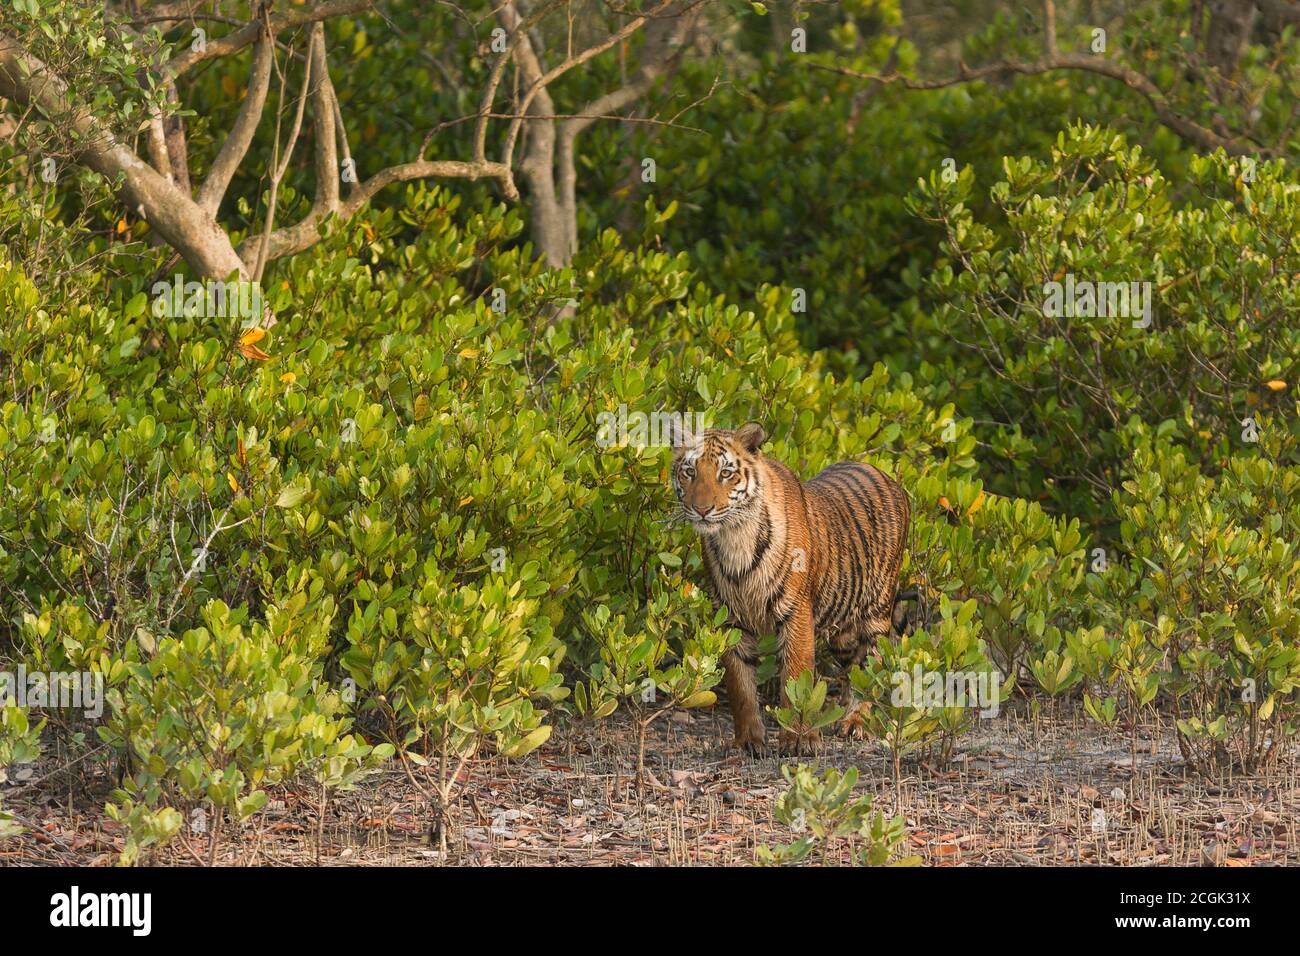 Jeune tigre du Bengale adulte de niveau inférieur regardant autour après être sorti des buissons en fin d'après-midi d'hiver à la réserve de tigres de Sundarban, Bengale occidental, Inde Banque D'Images